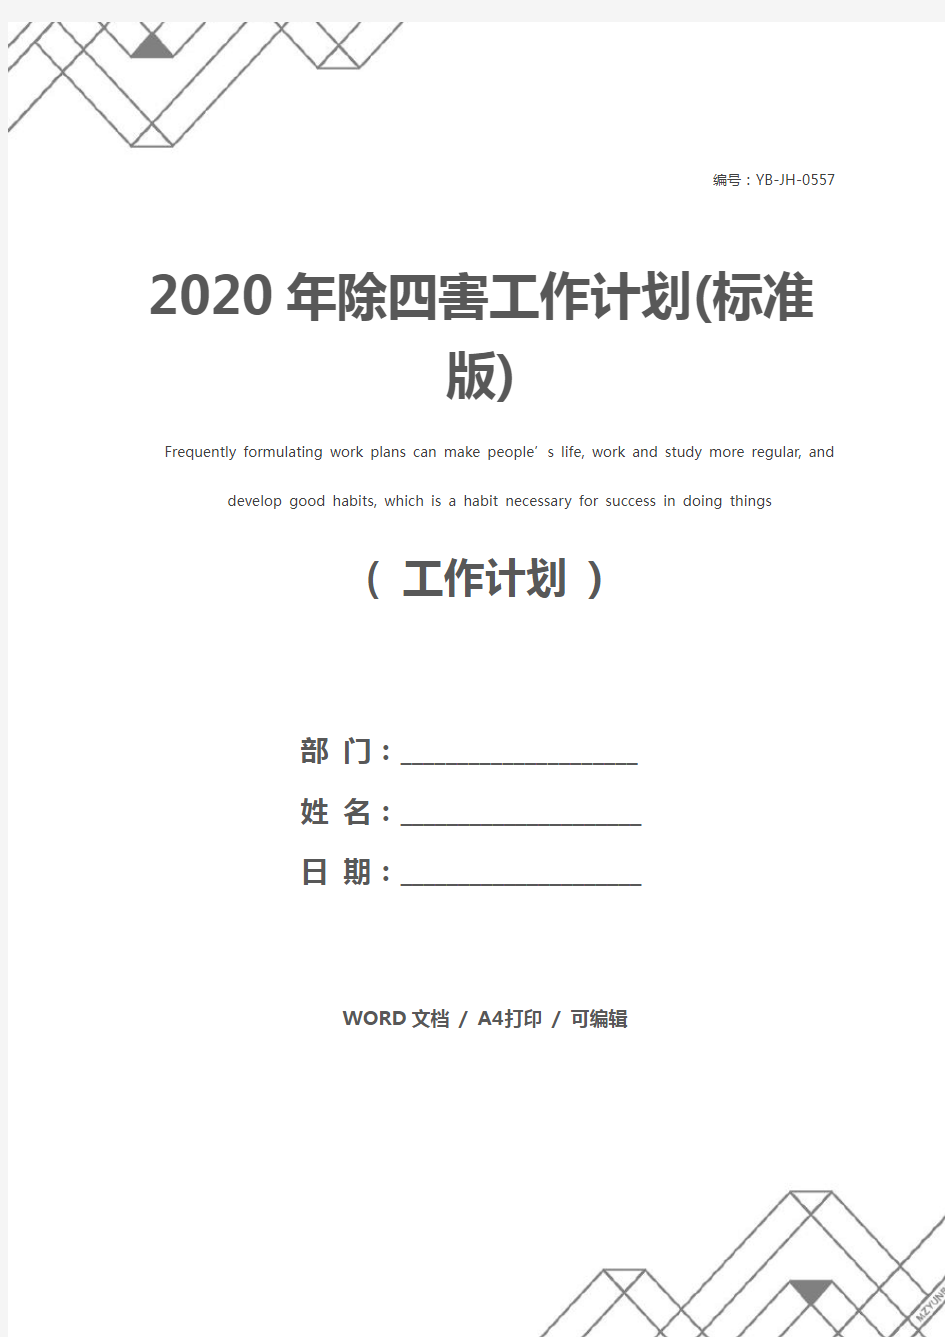 2020年除四害工作计划(标准版)